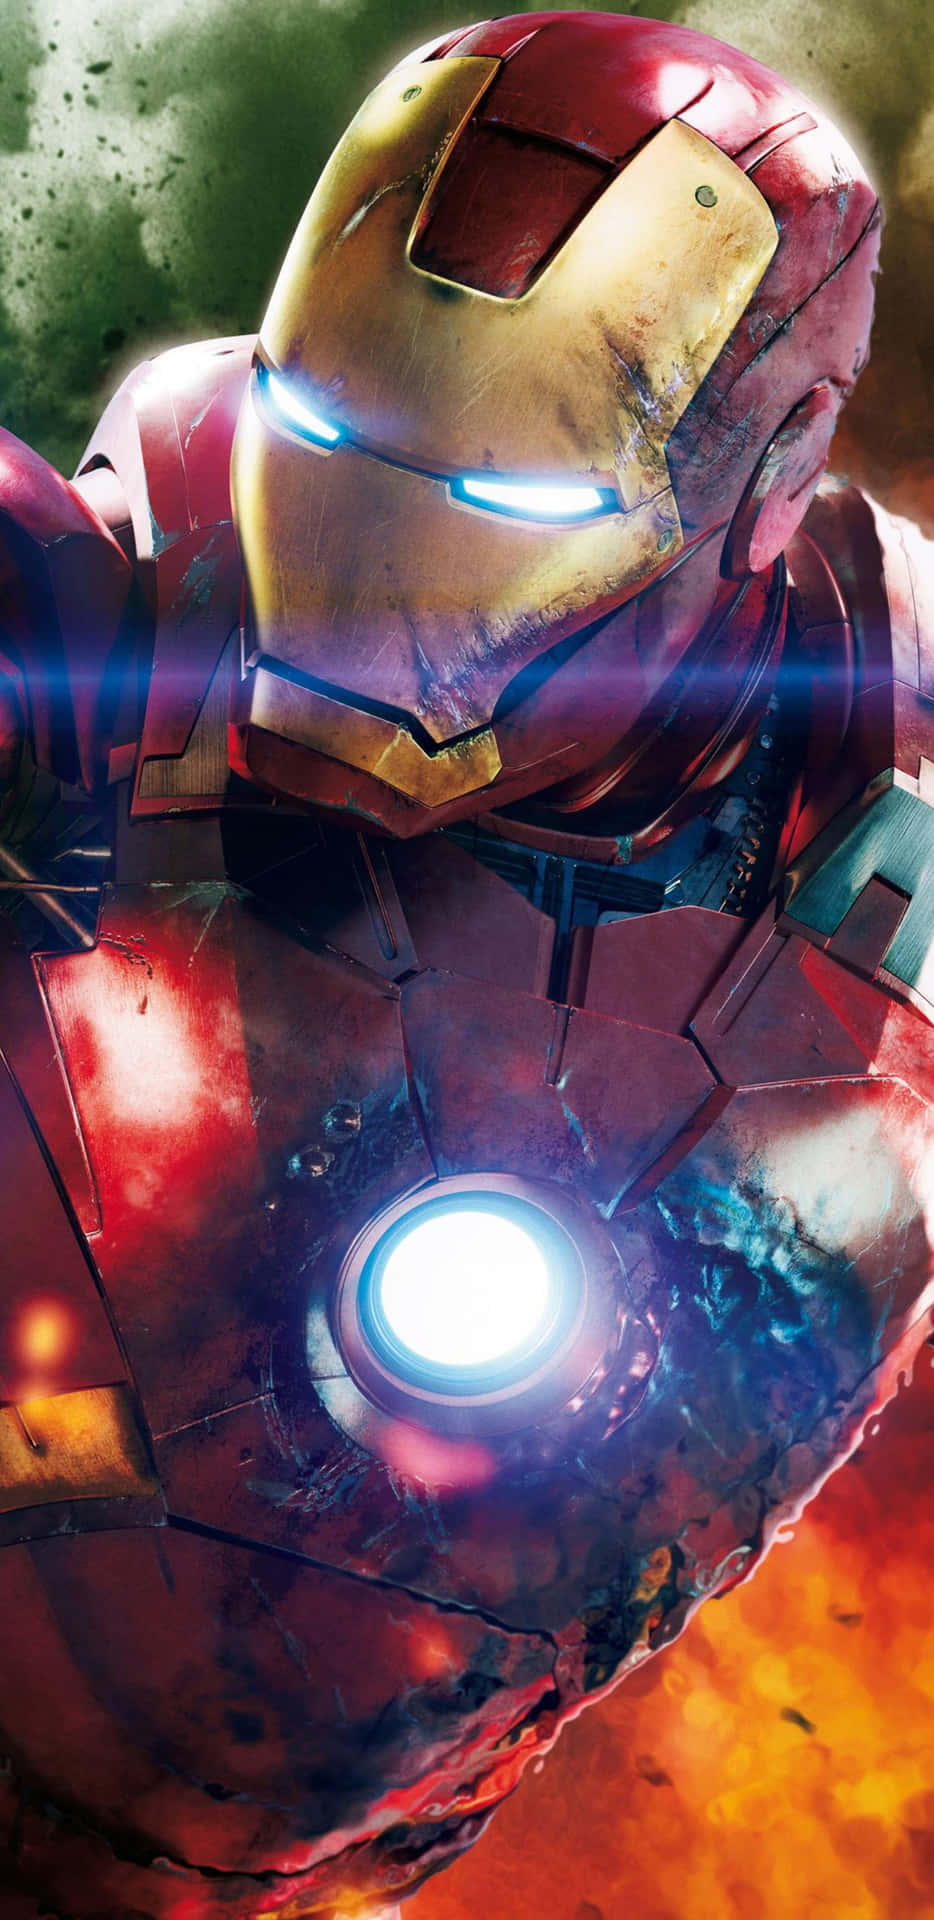 Pixel3xl Iron Man Ikonisk Superhjältebakgrund.